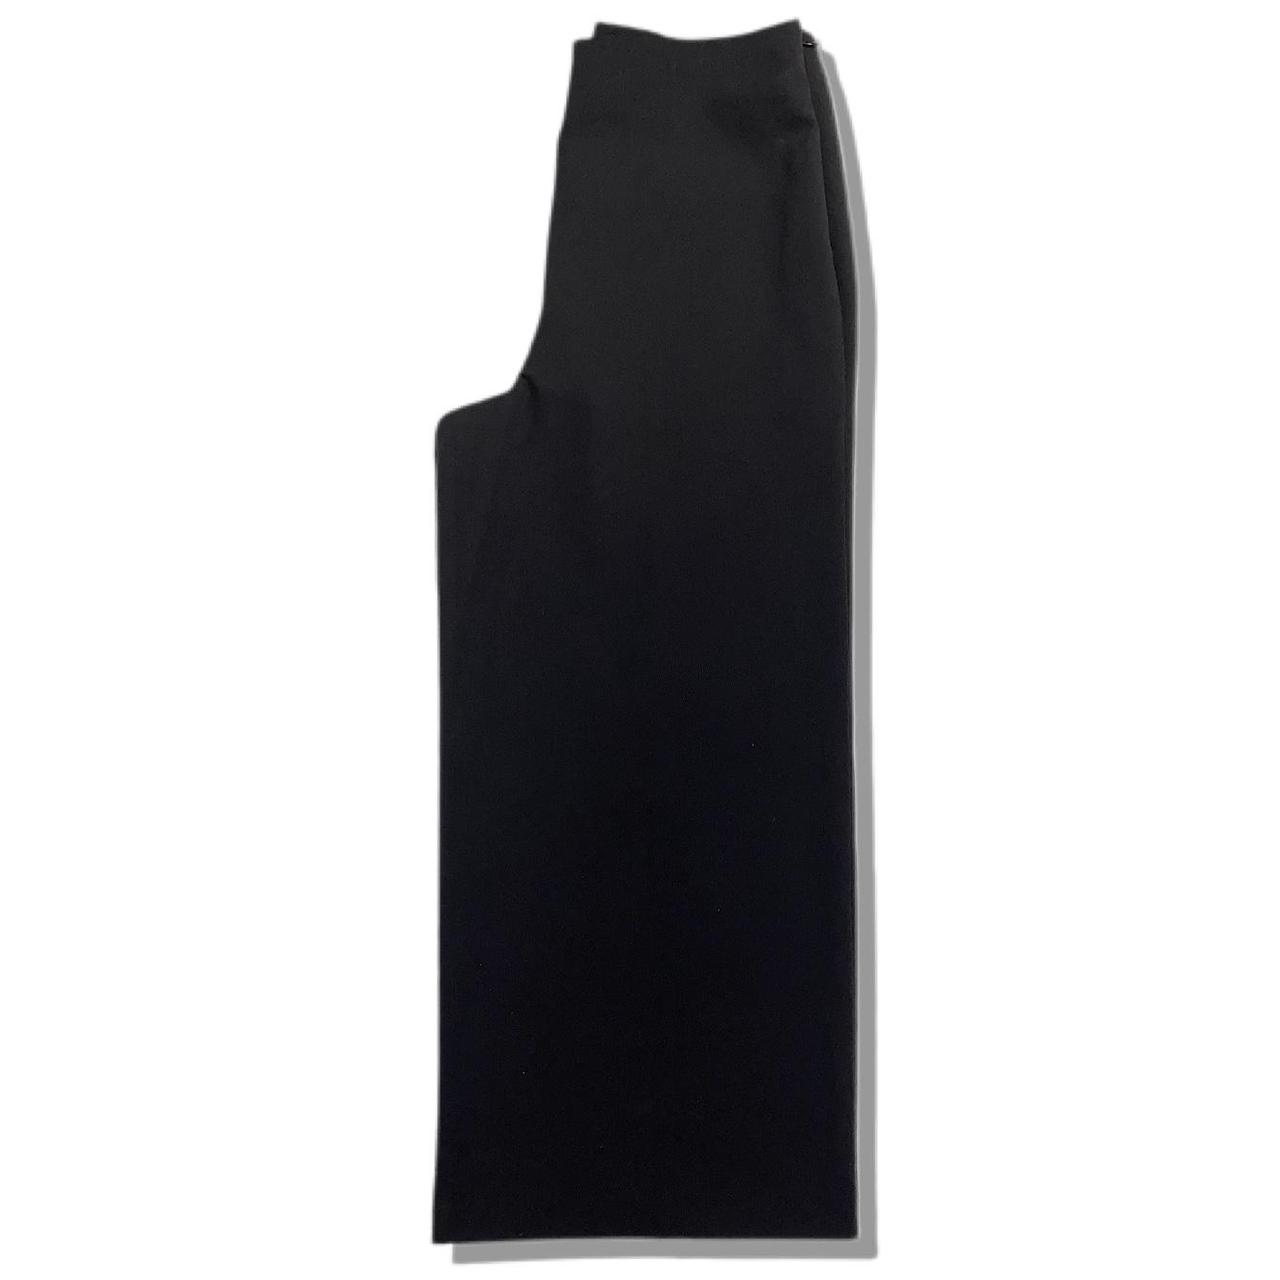 Product Image 3 - Miss Selfridge Smart Trousers 

💬Description: